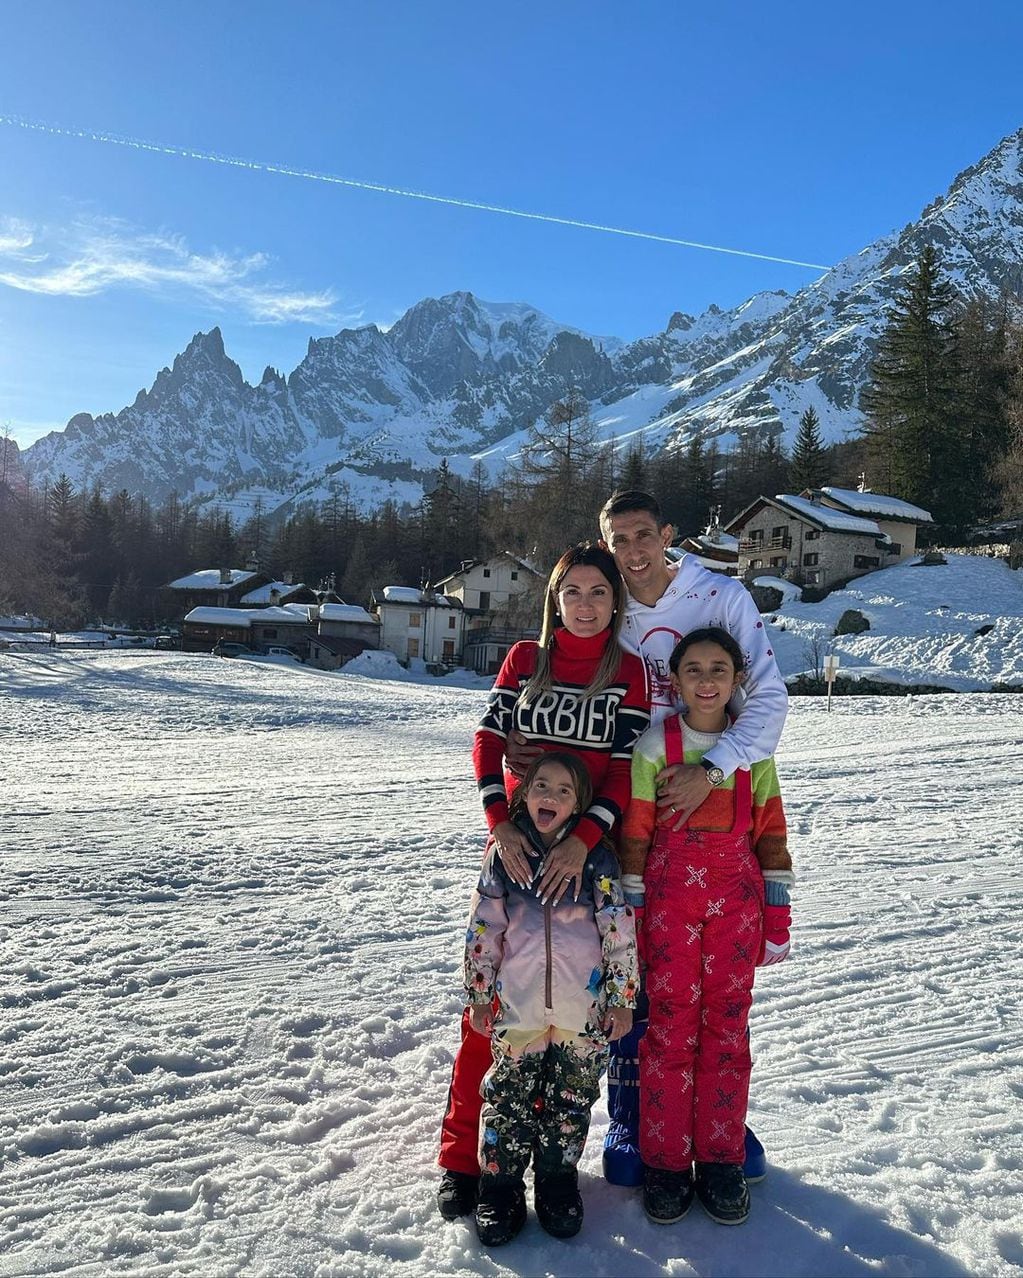 El rosarino aprovechó su día libre para divertirse en la nieve con su familia.